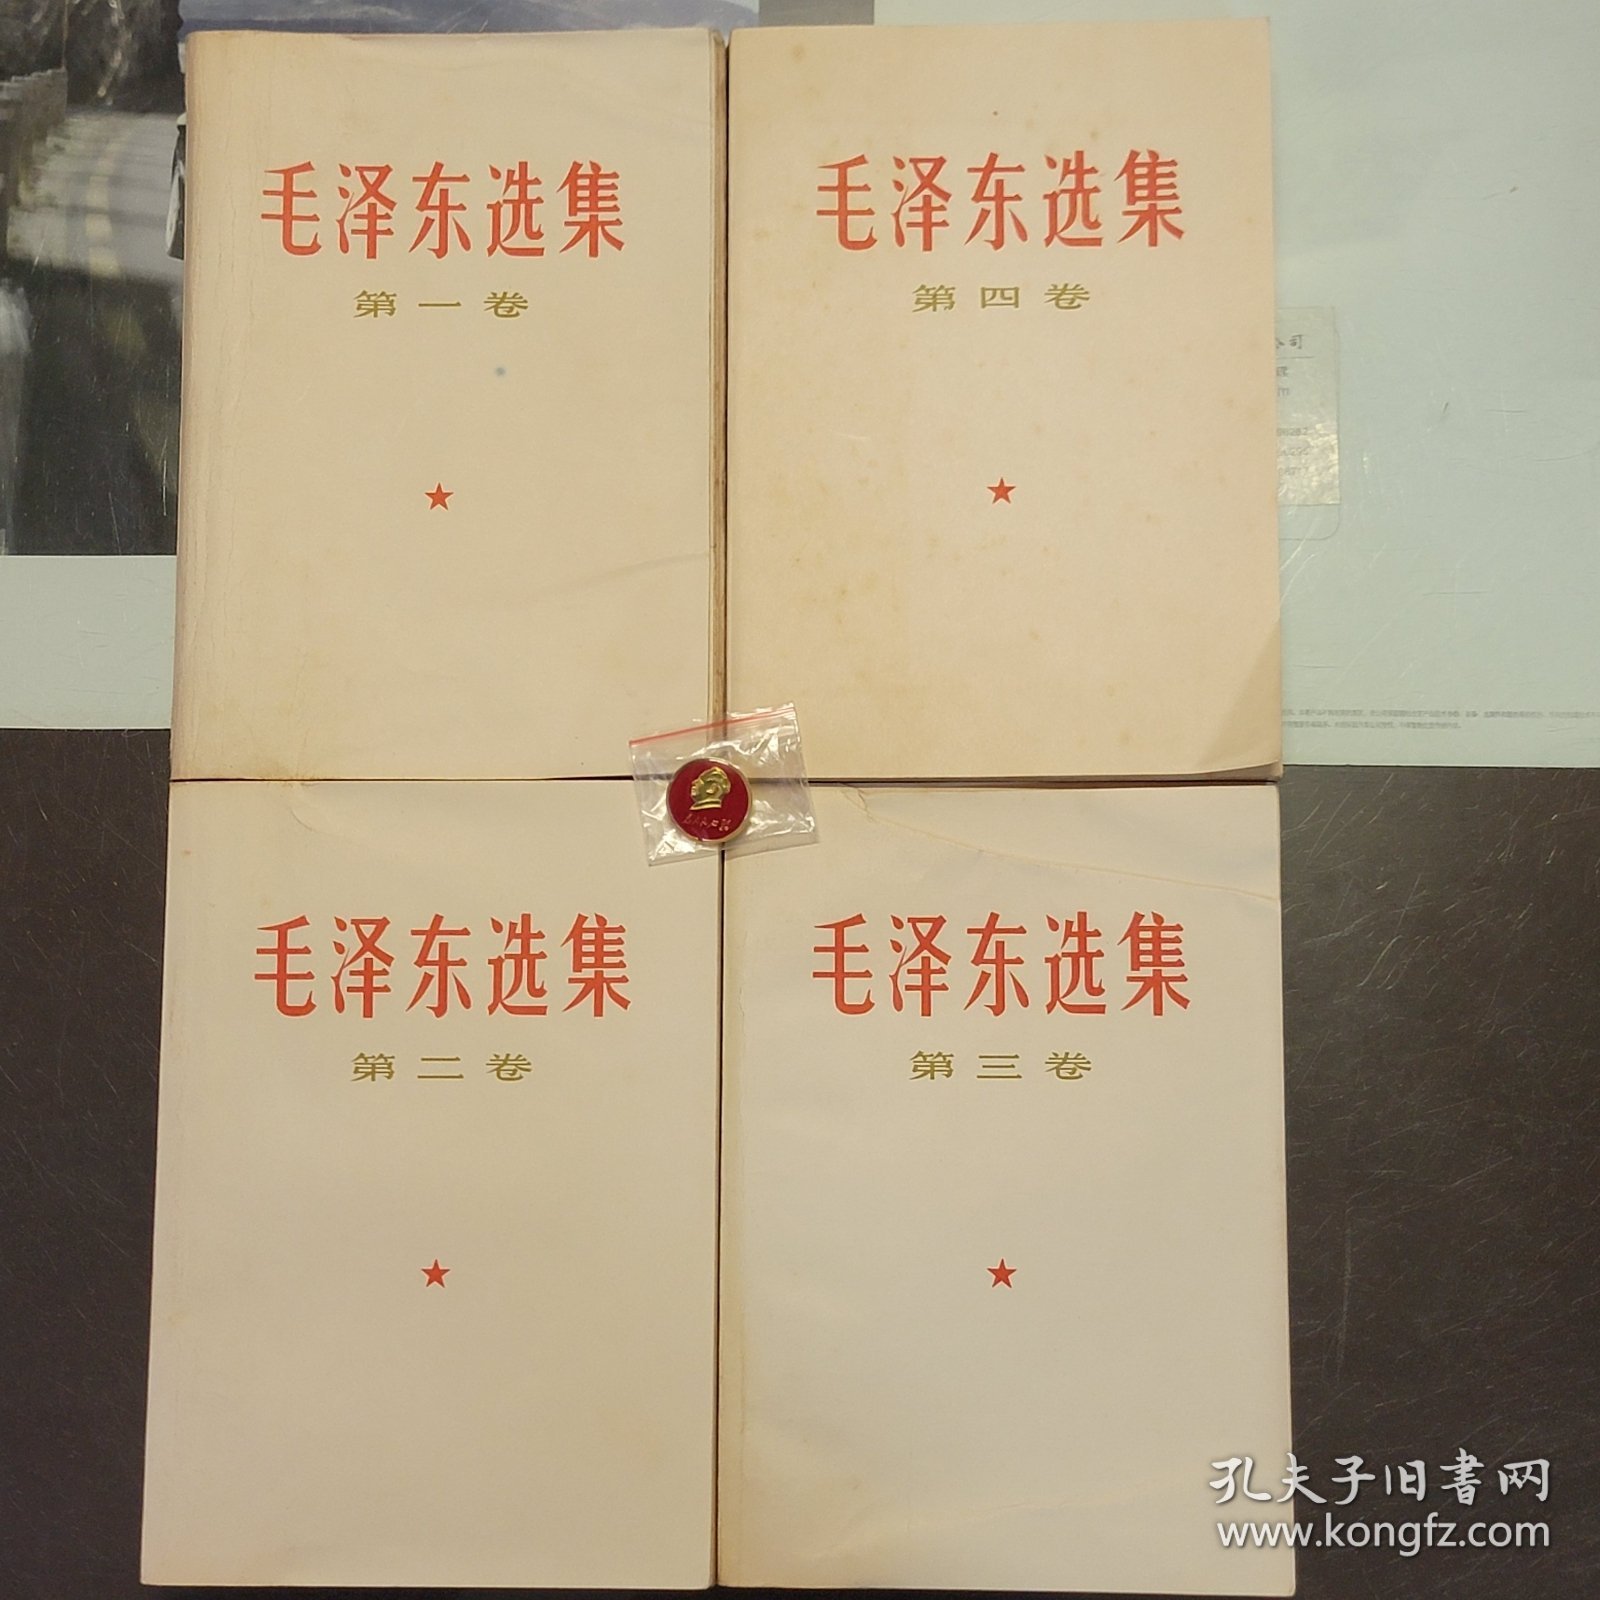 全国包邮 收藏真品全初版上海一印66版 85新 66年 白皮红字封面 毛泽东选集 1-4卷 白皮简体 编号051206商品实图